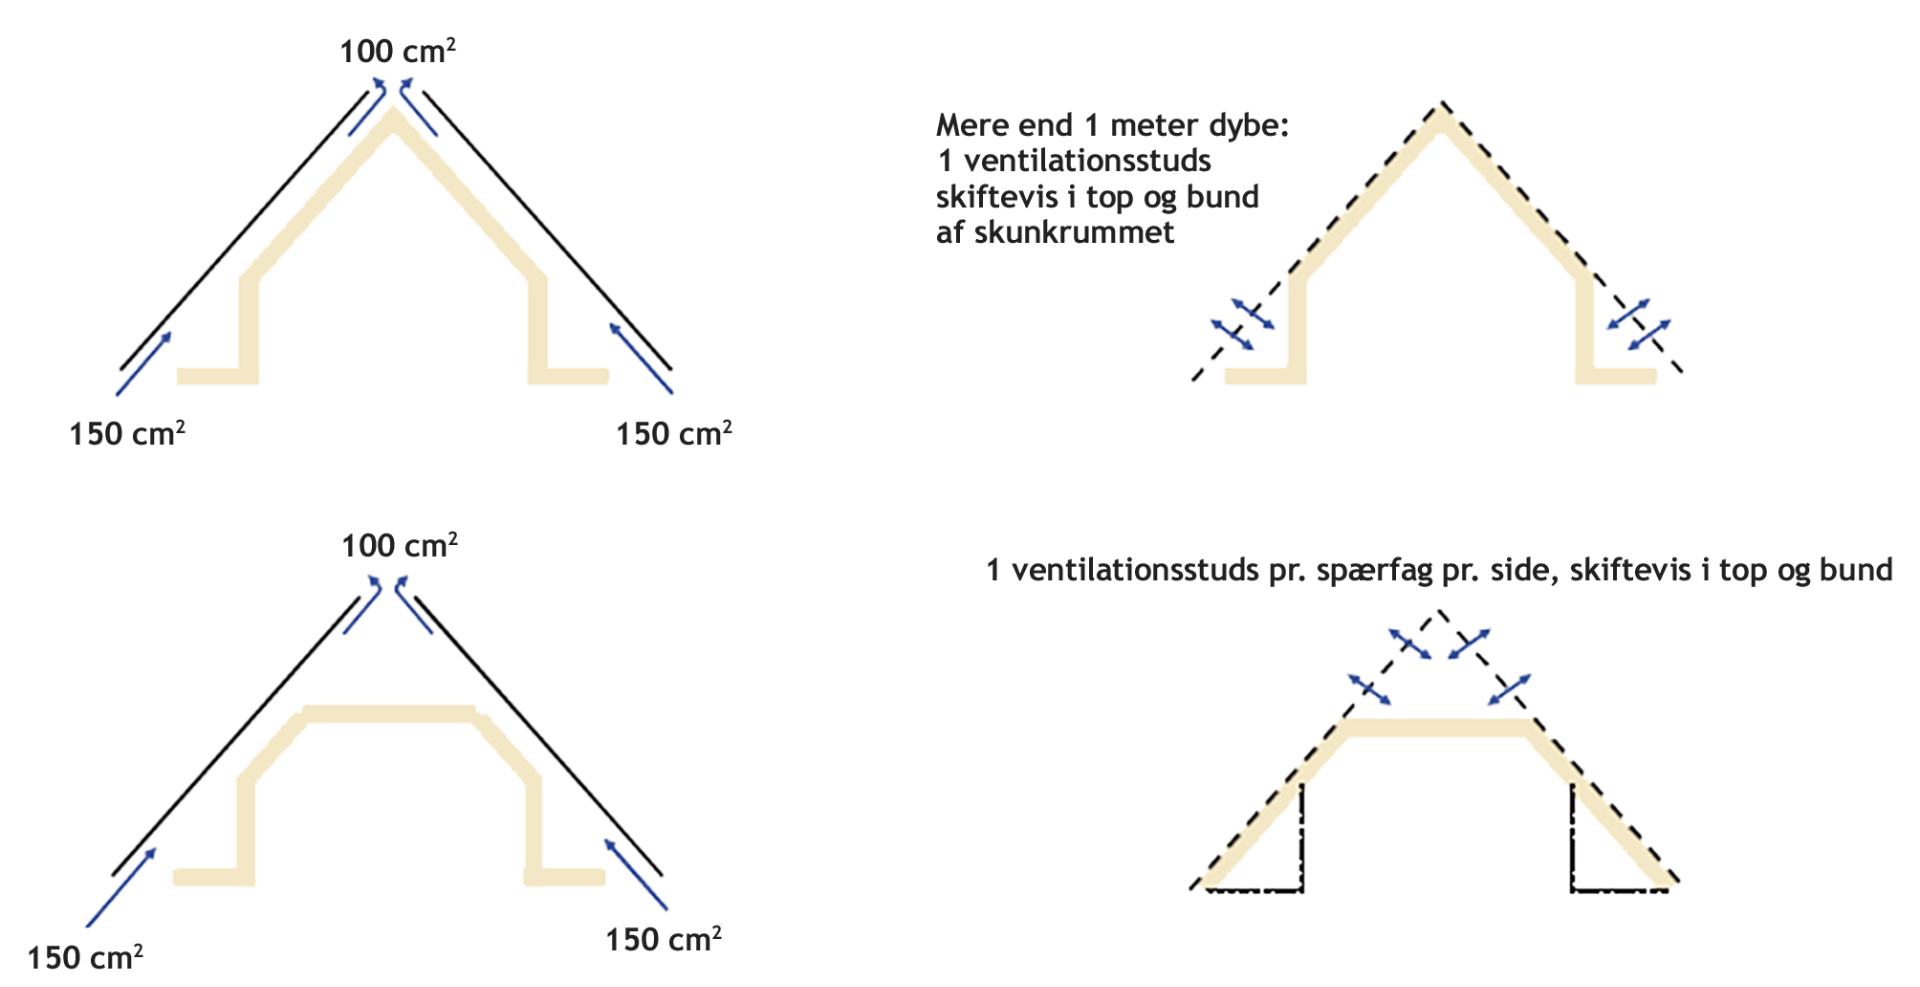 Ventilation af skrå tagflader set i sammenhæng med ventilation af hele tagkonstuktionen - ved diffusionstæt undertag (til venstre) og diffusionsåbent undertag (til højre). Hhv. 150 cm² og 100 cm² i hvert spærfag ved diffusionstæt undertag.